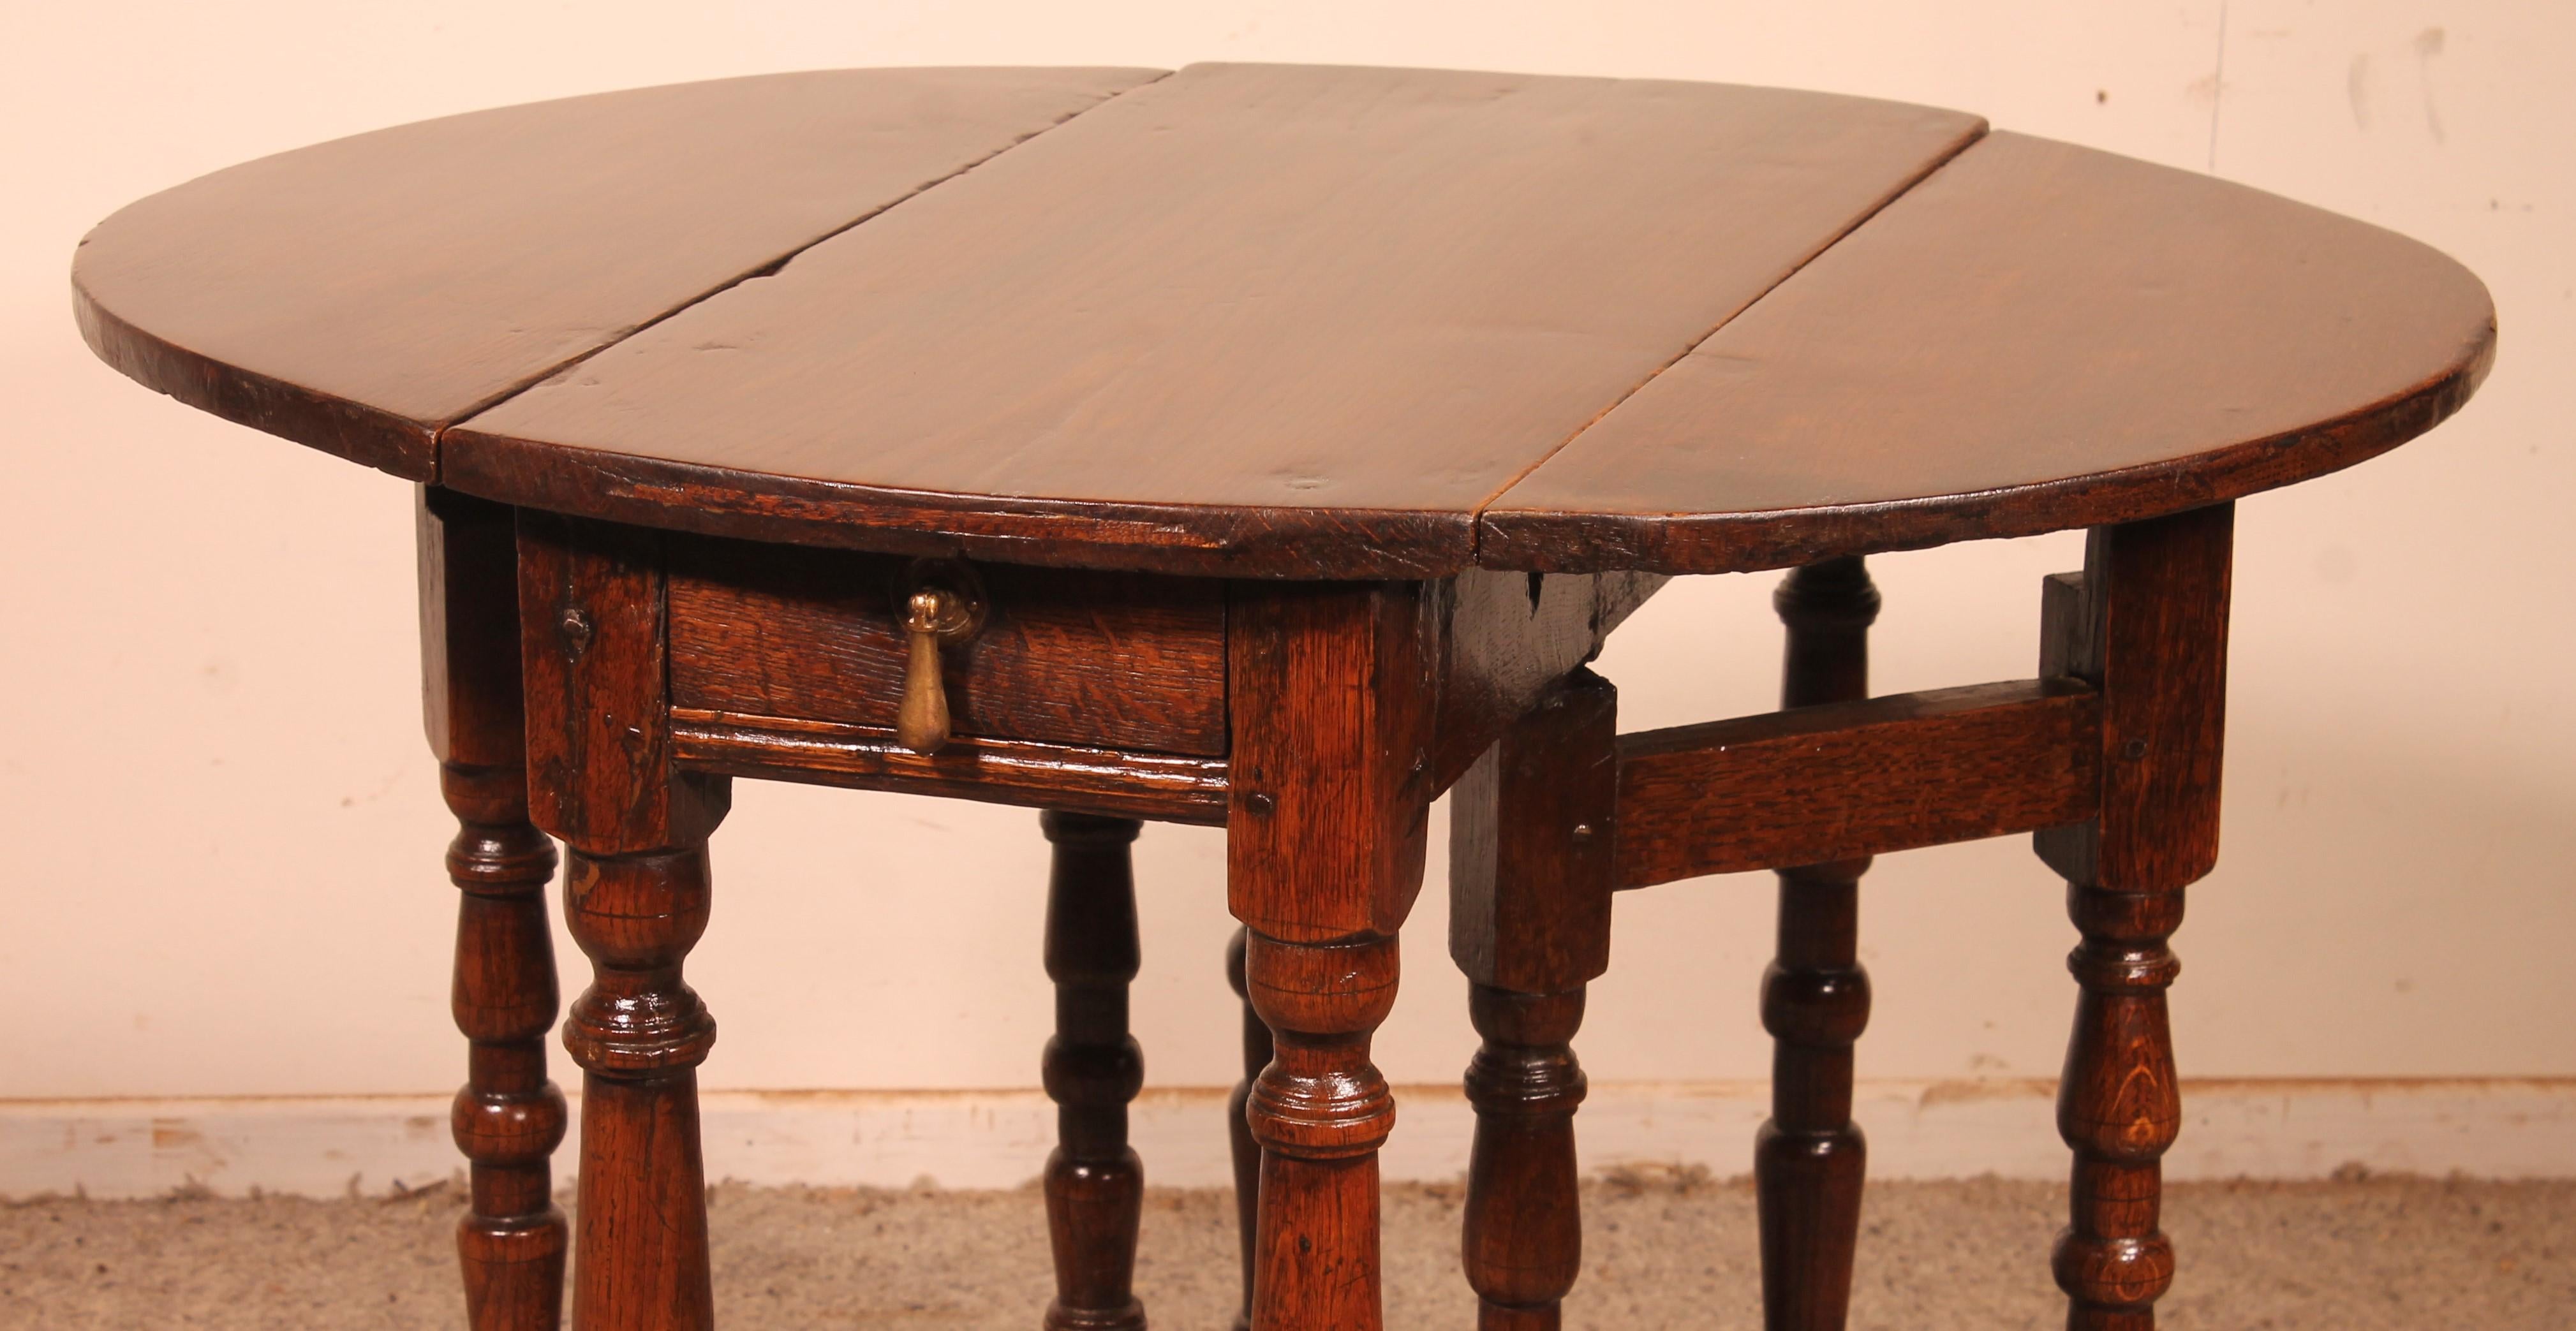 schöner kleiner Eichentisch aus dem Anfang des 18. Jahrhunderts aus England, genannt Gateleg table

Sehr schöne kleine Tabelle, die eine hervorragende Drehung und eine Schublade in den Gürtel hat

der Tisch kann als dekorativer Tisch, als kleine